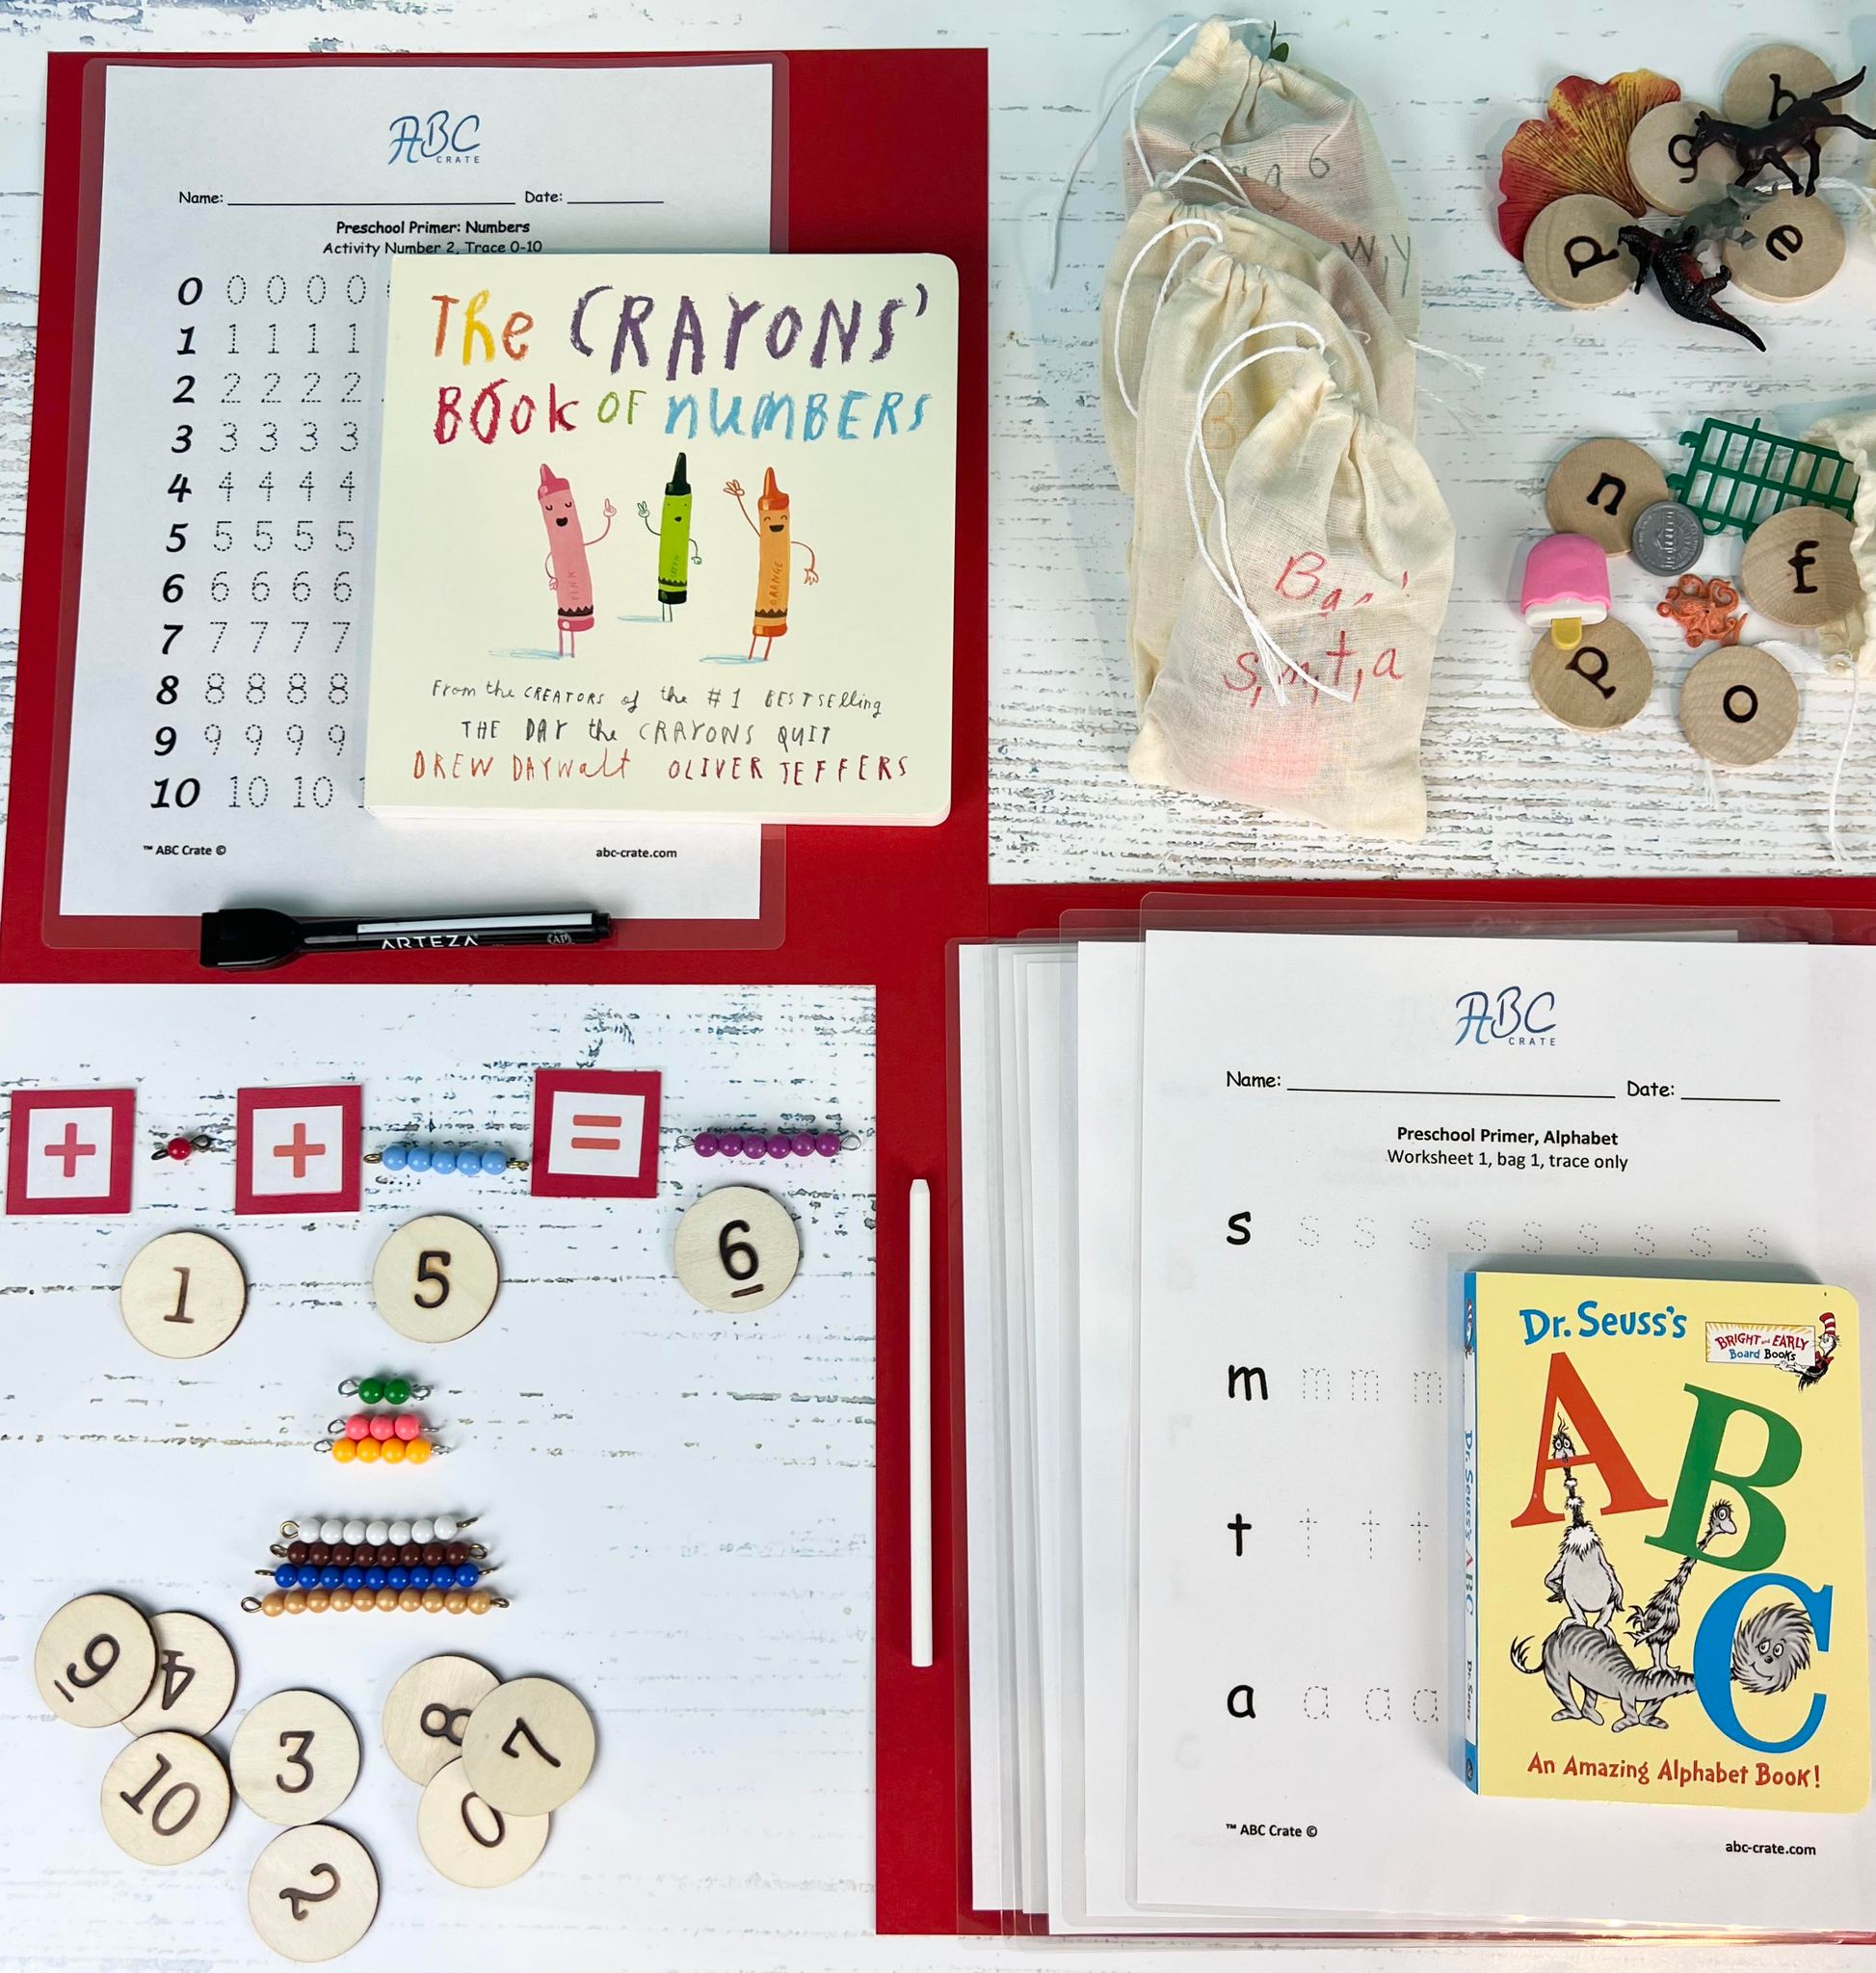 Preschool Primer Kit